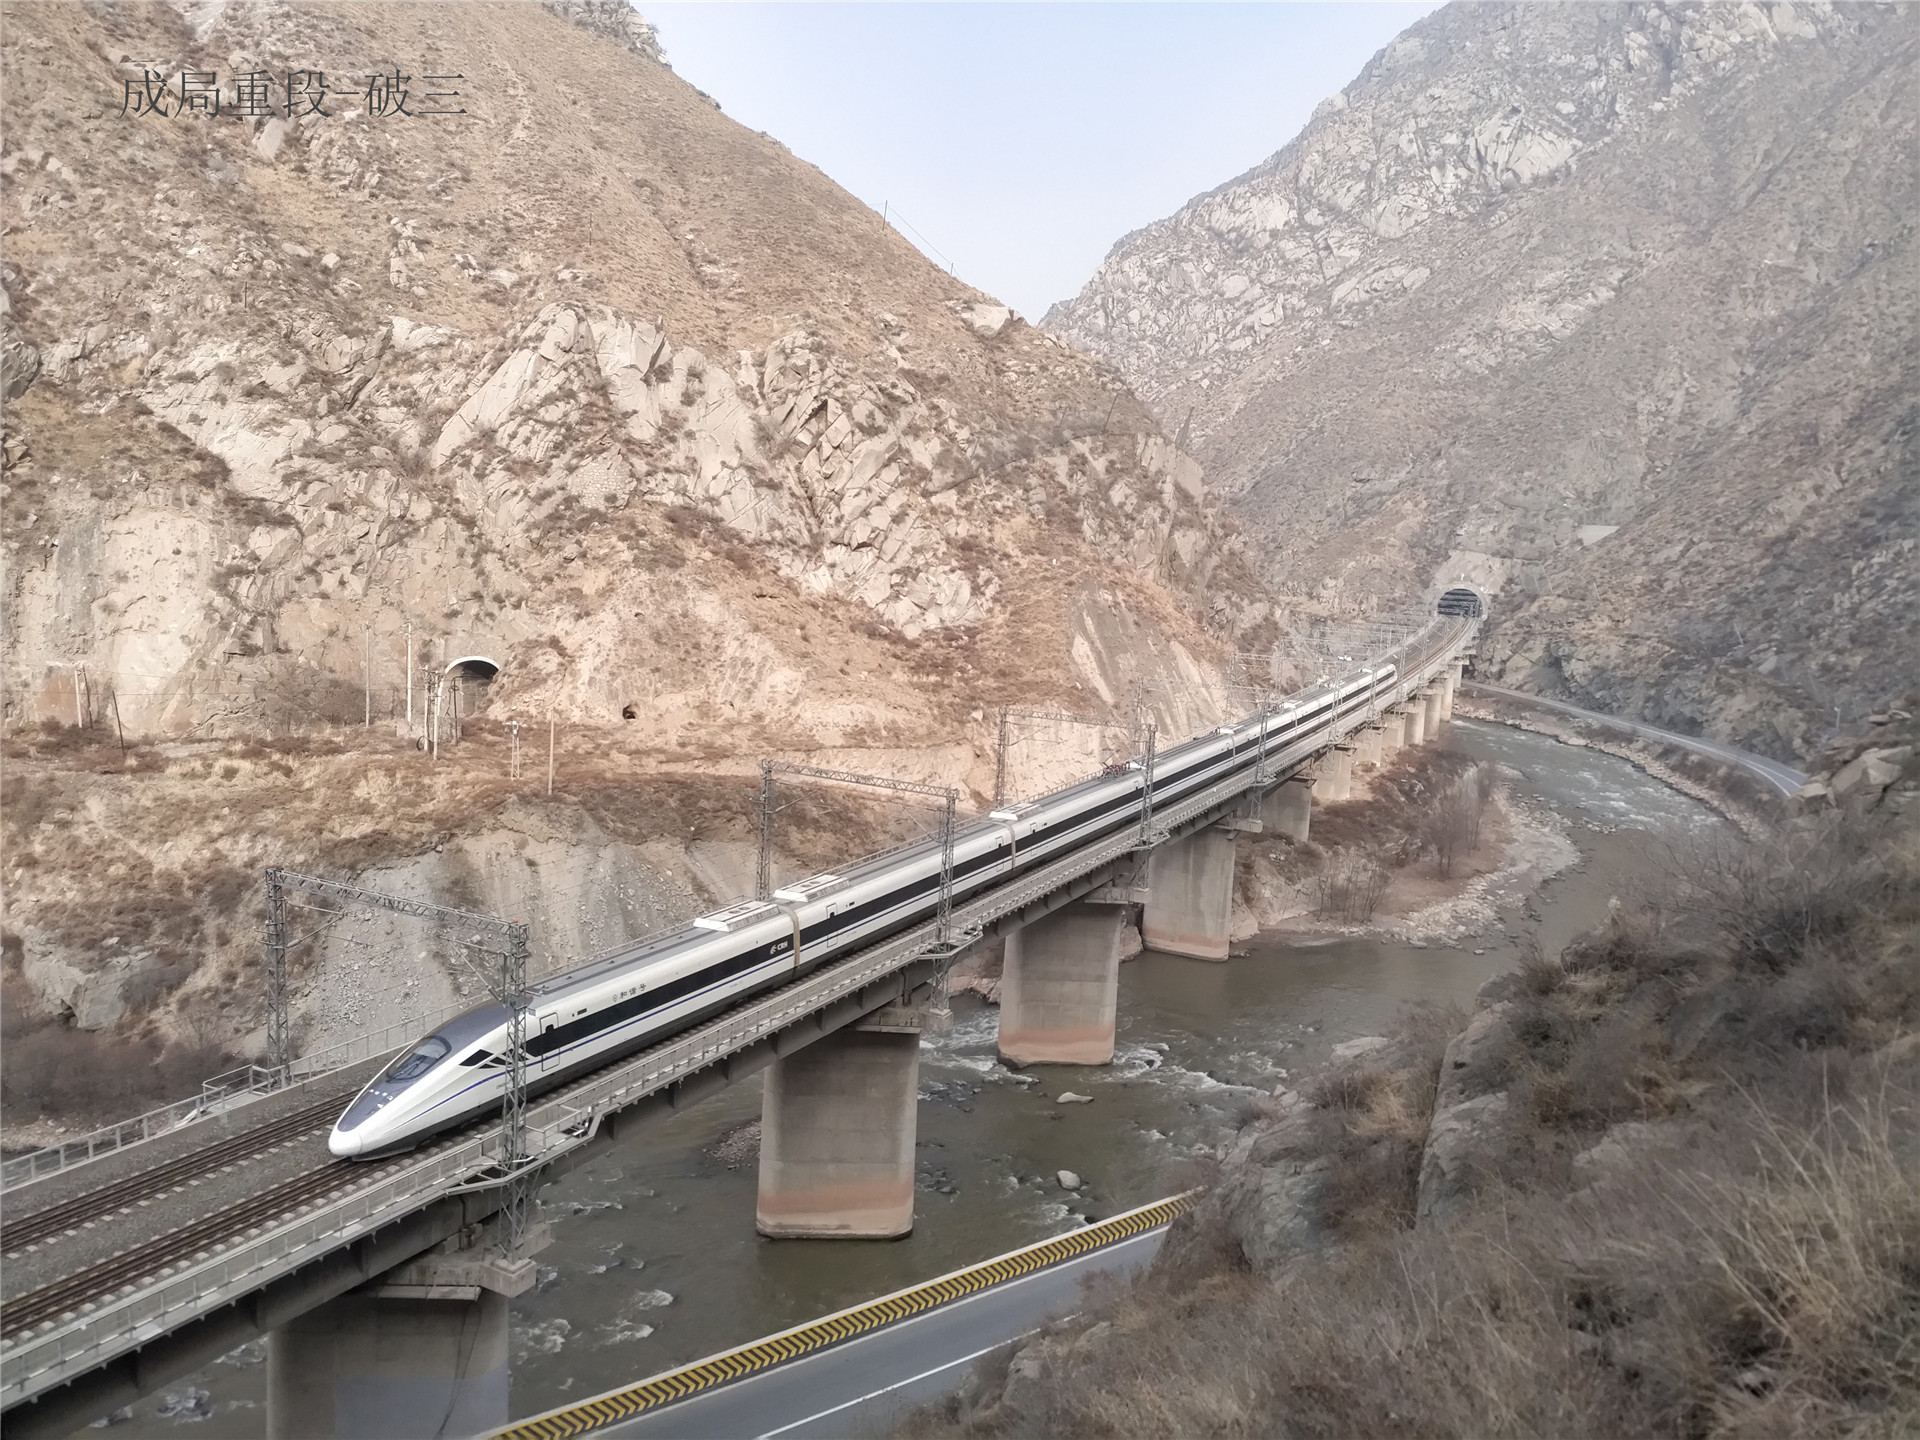 通往青藏高原的第一条铁路兰青铁路